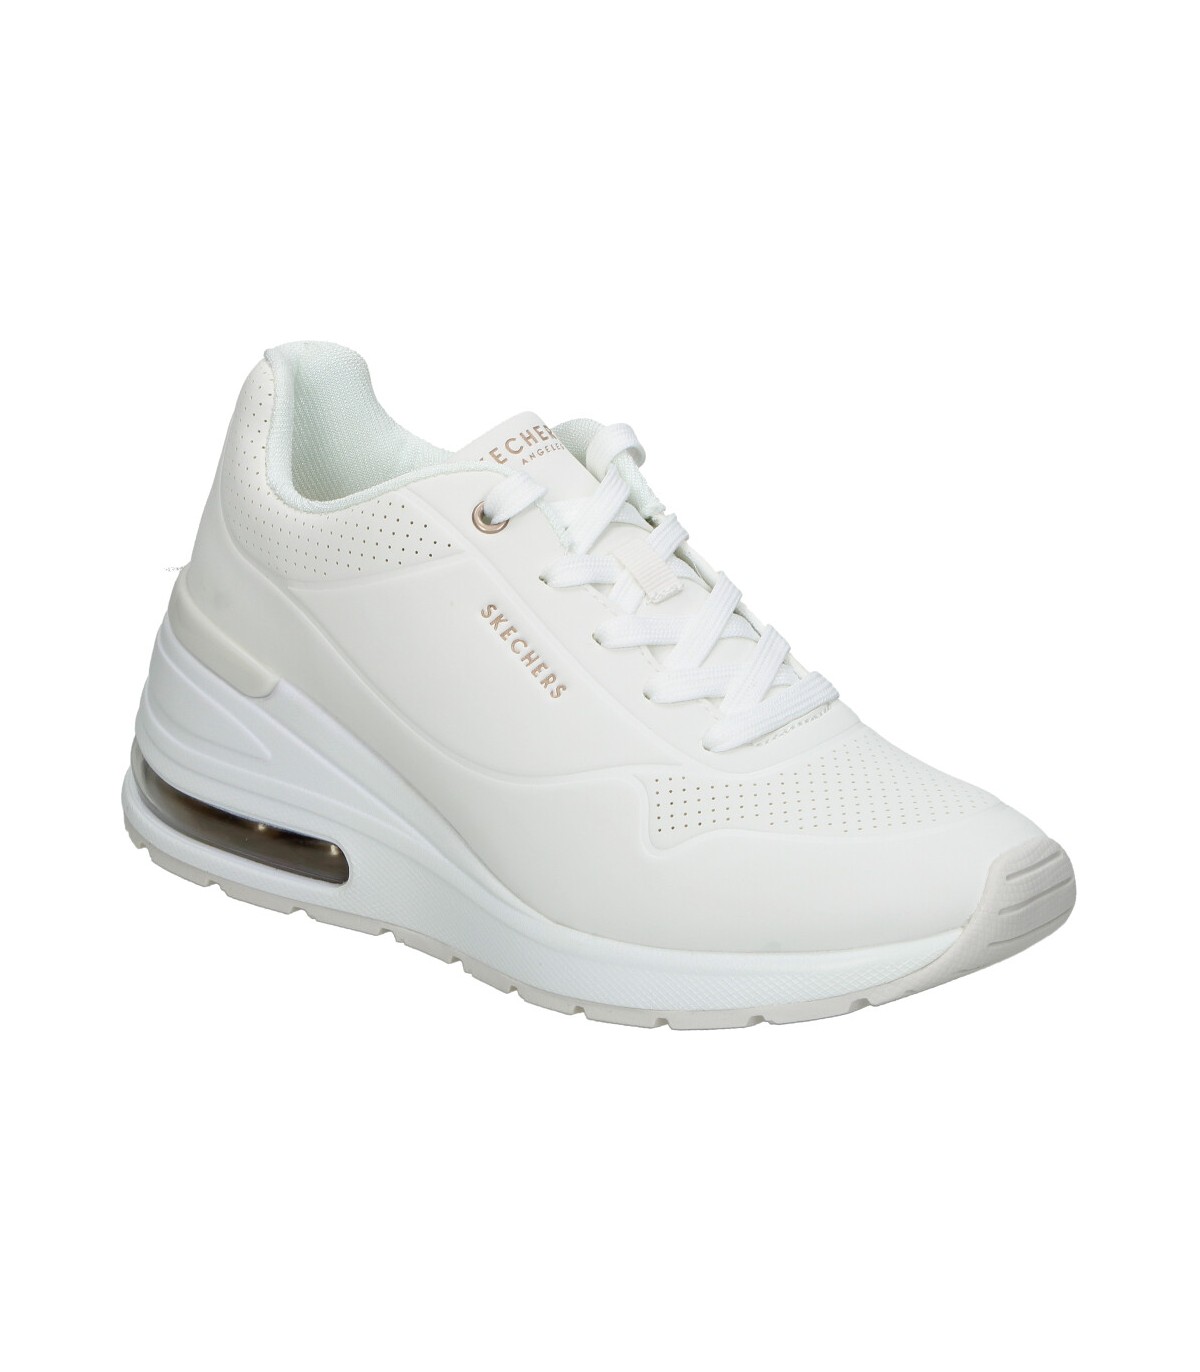 Calzado deportivo para mujer Skechers Uno color blanco en Primarelli.es